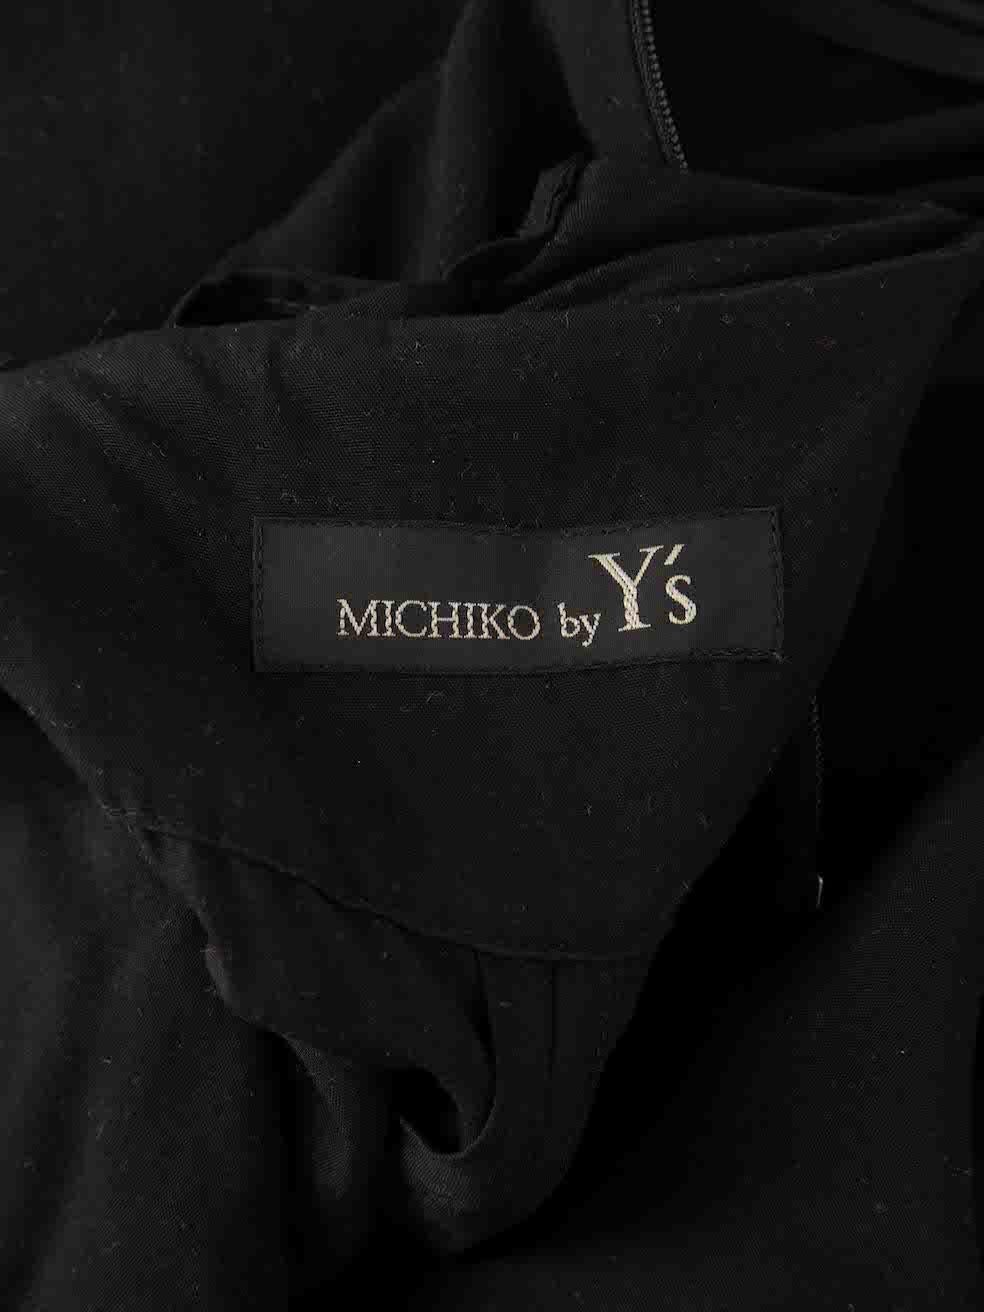 Combinaison noire à lacets Yohji Yamamoto Michiko by Y's, taille S Pour femmes en vente